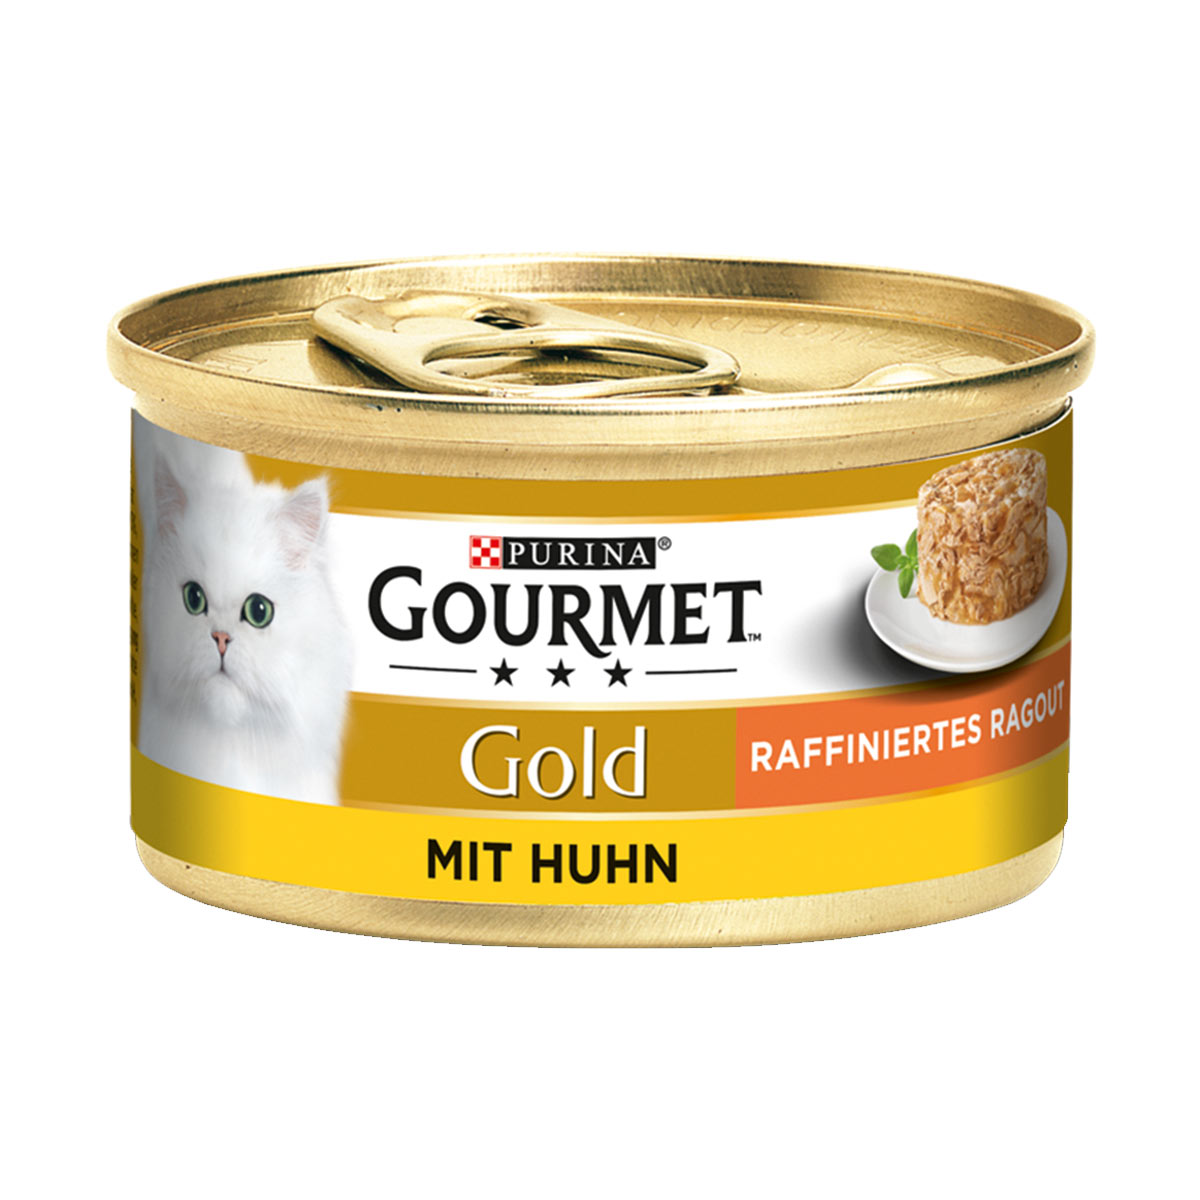 GOURMET Gold Raffiniertes Ragout mit Huhn 12x85g